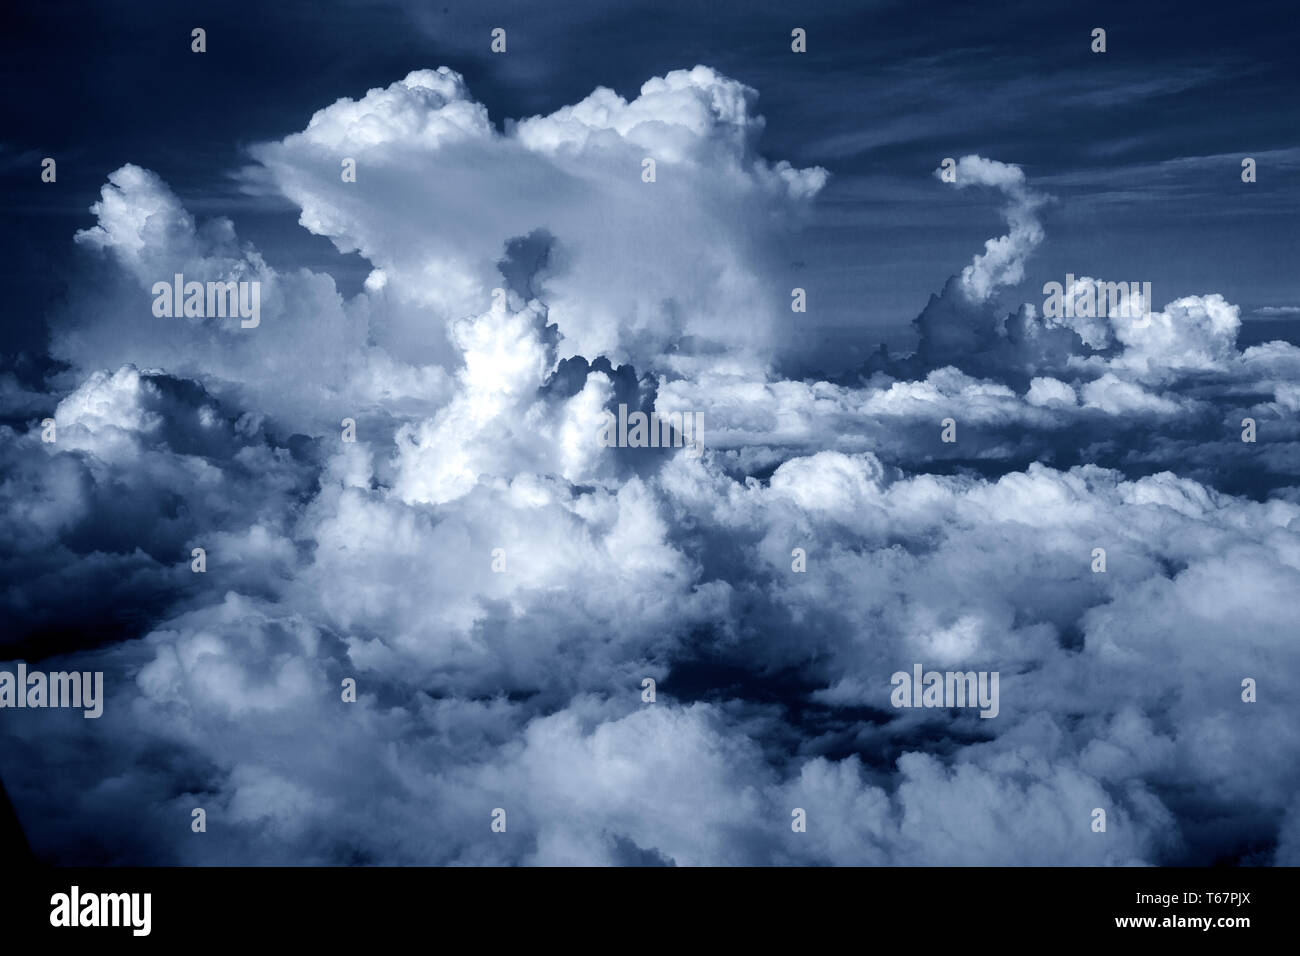 Thundernubi fuori Eagle Ford in Texas. La nuvola di cumulonimbus è una nuvola verticale densa e torreggiante formata da vapori d'acqua spinti verso l'alto da potenti correnti d'aria. Foto Stock